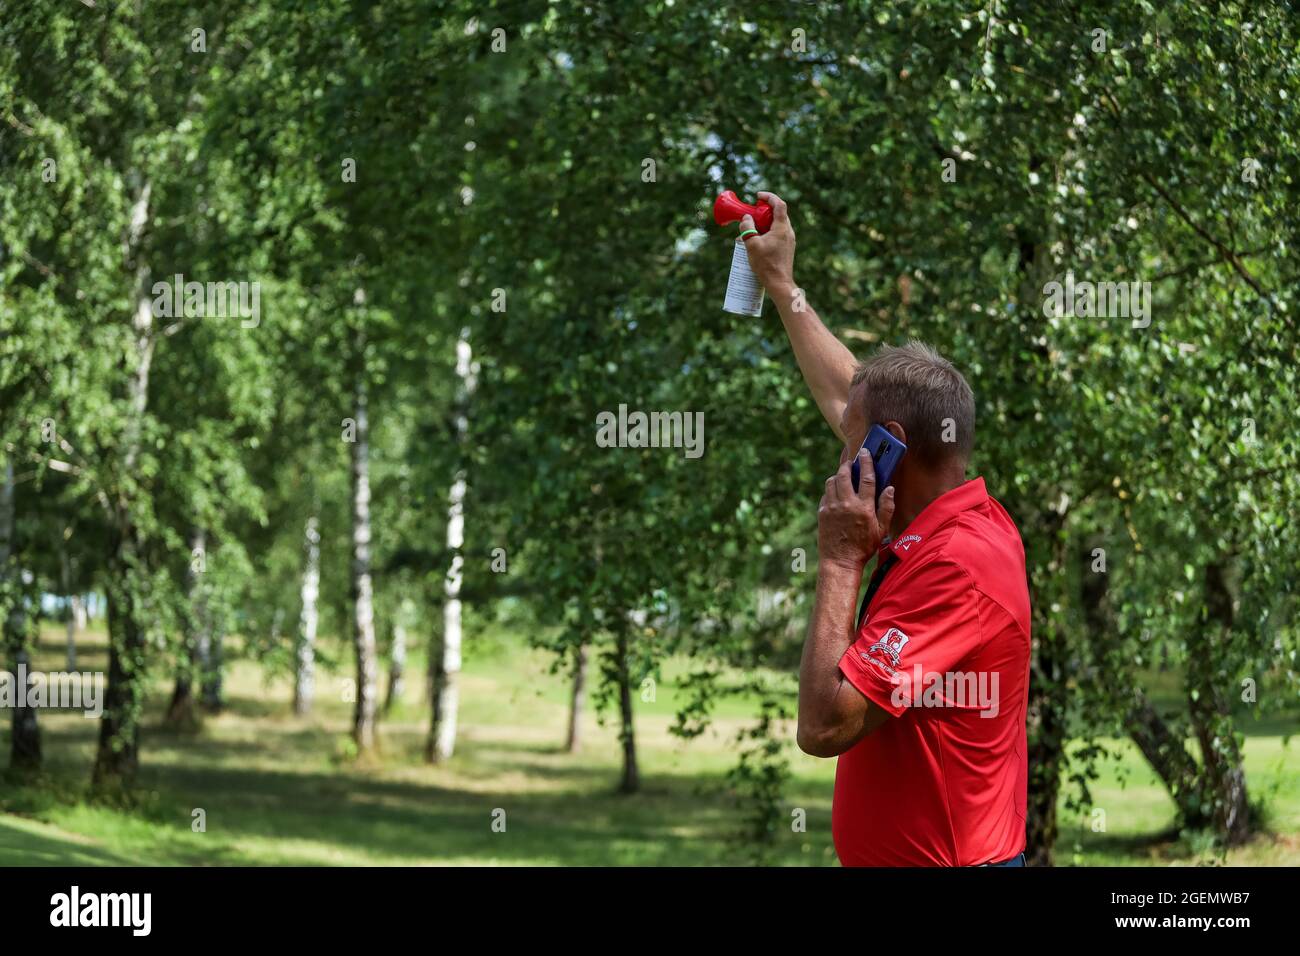 Minsk. Belarus- 25.07.2021 - El hombre señala el comienzo de un torneo de golf. Fotografías de alta calidad Foto de stock